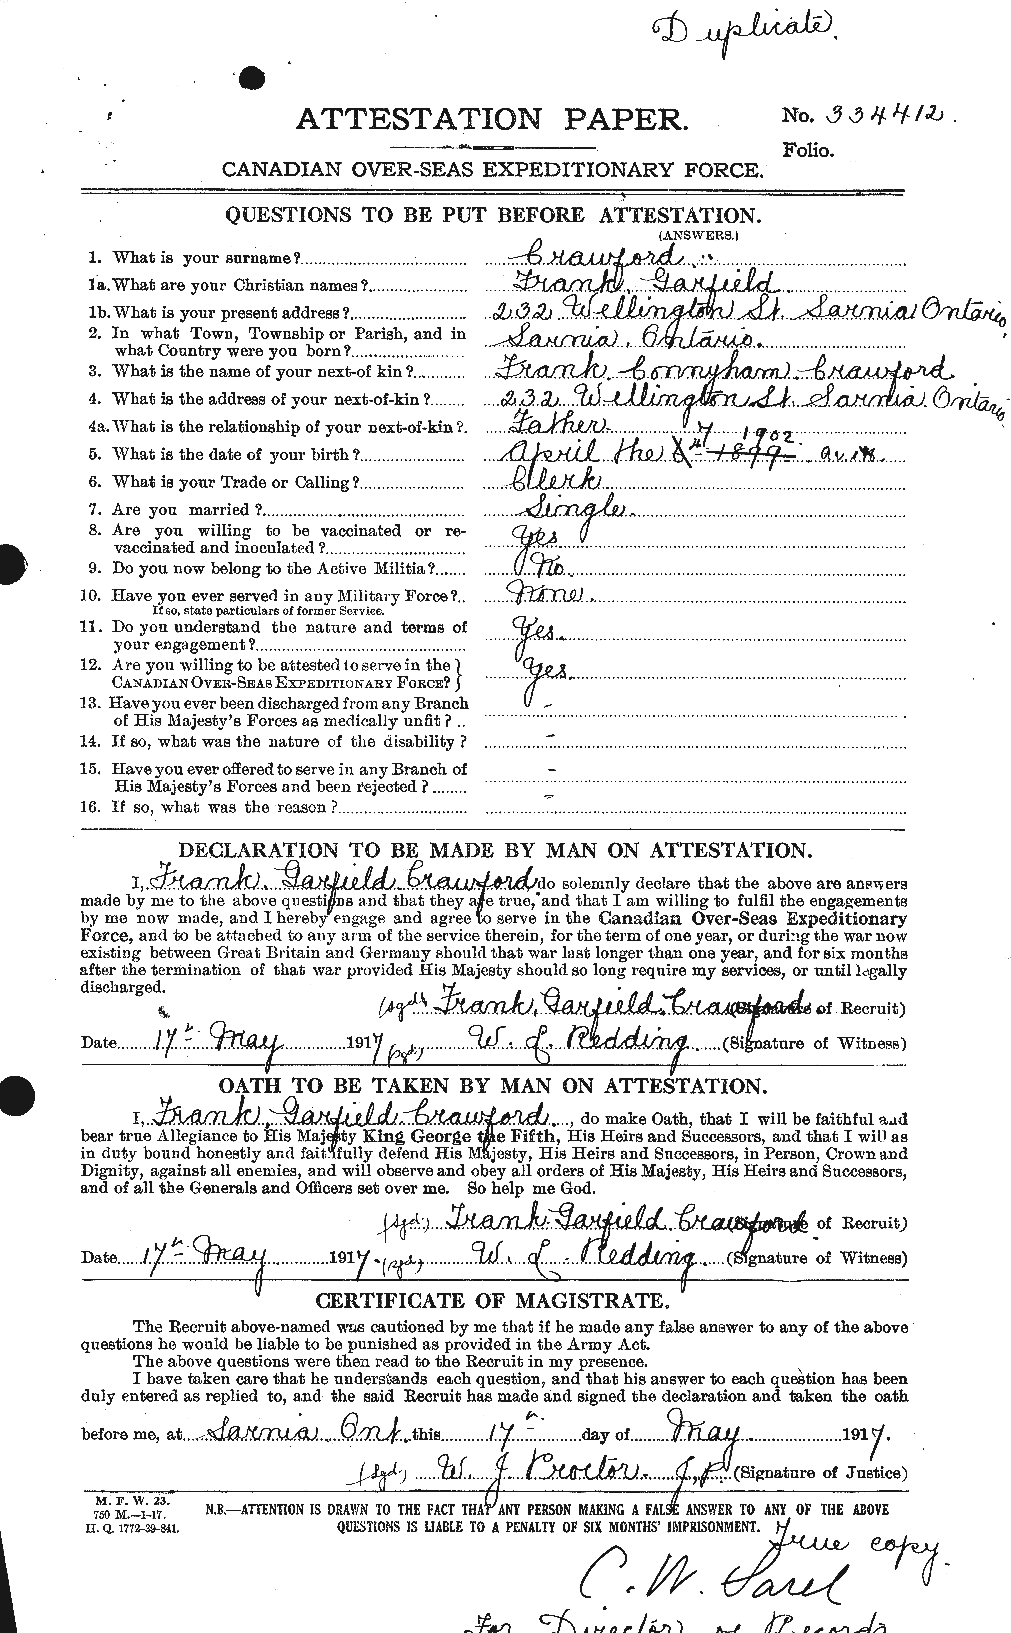 Dossiers du Personnel de la Première Guerre mondiale - CEC 060737a